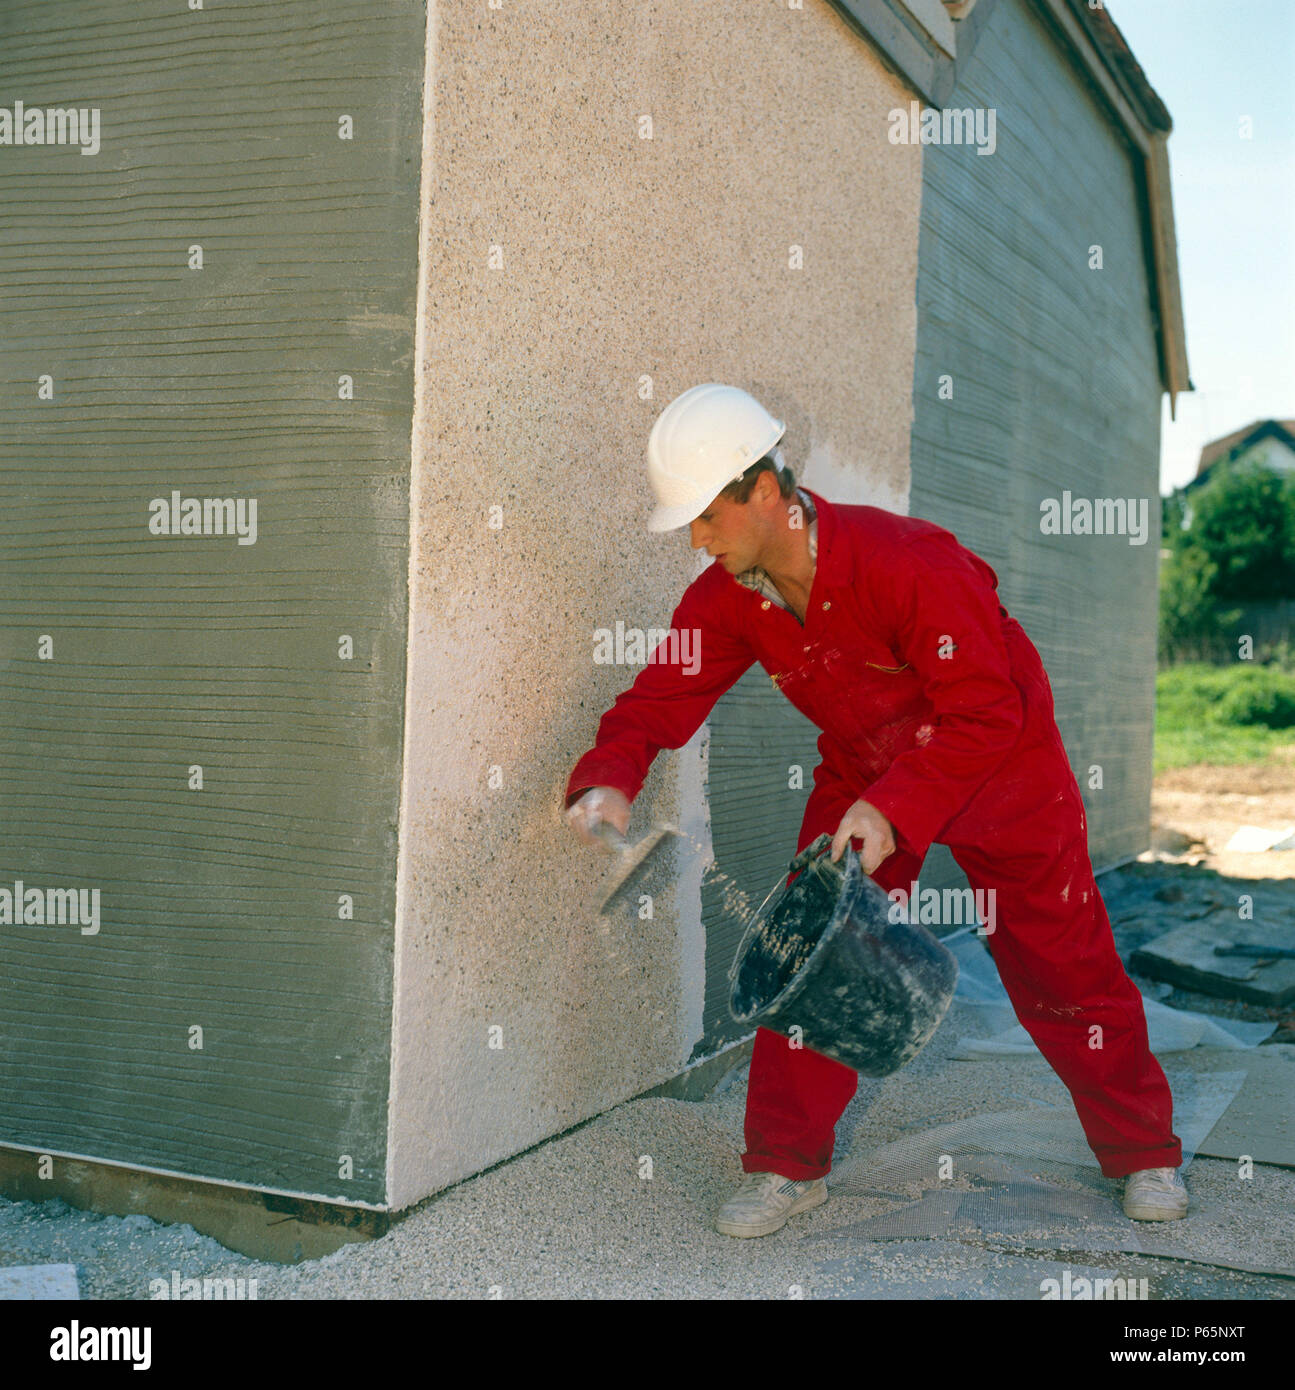 Pebble dash applied on a suburban housing estate Stock Photo